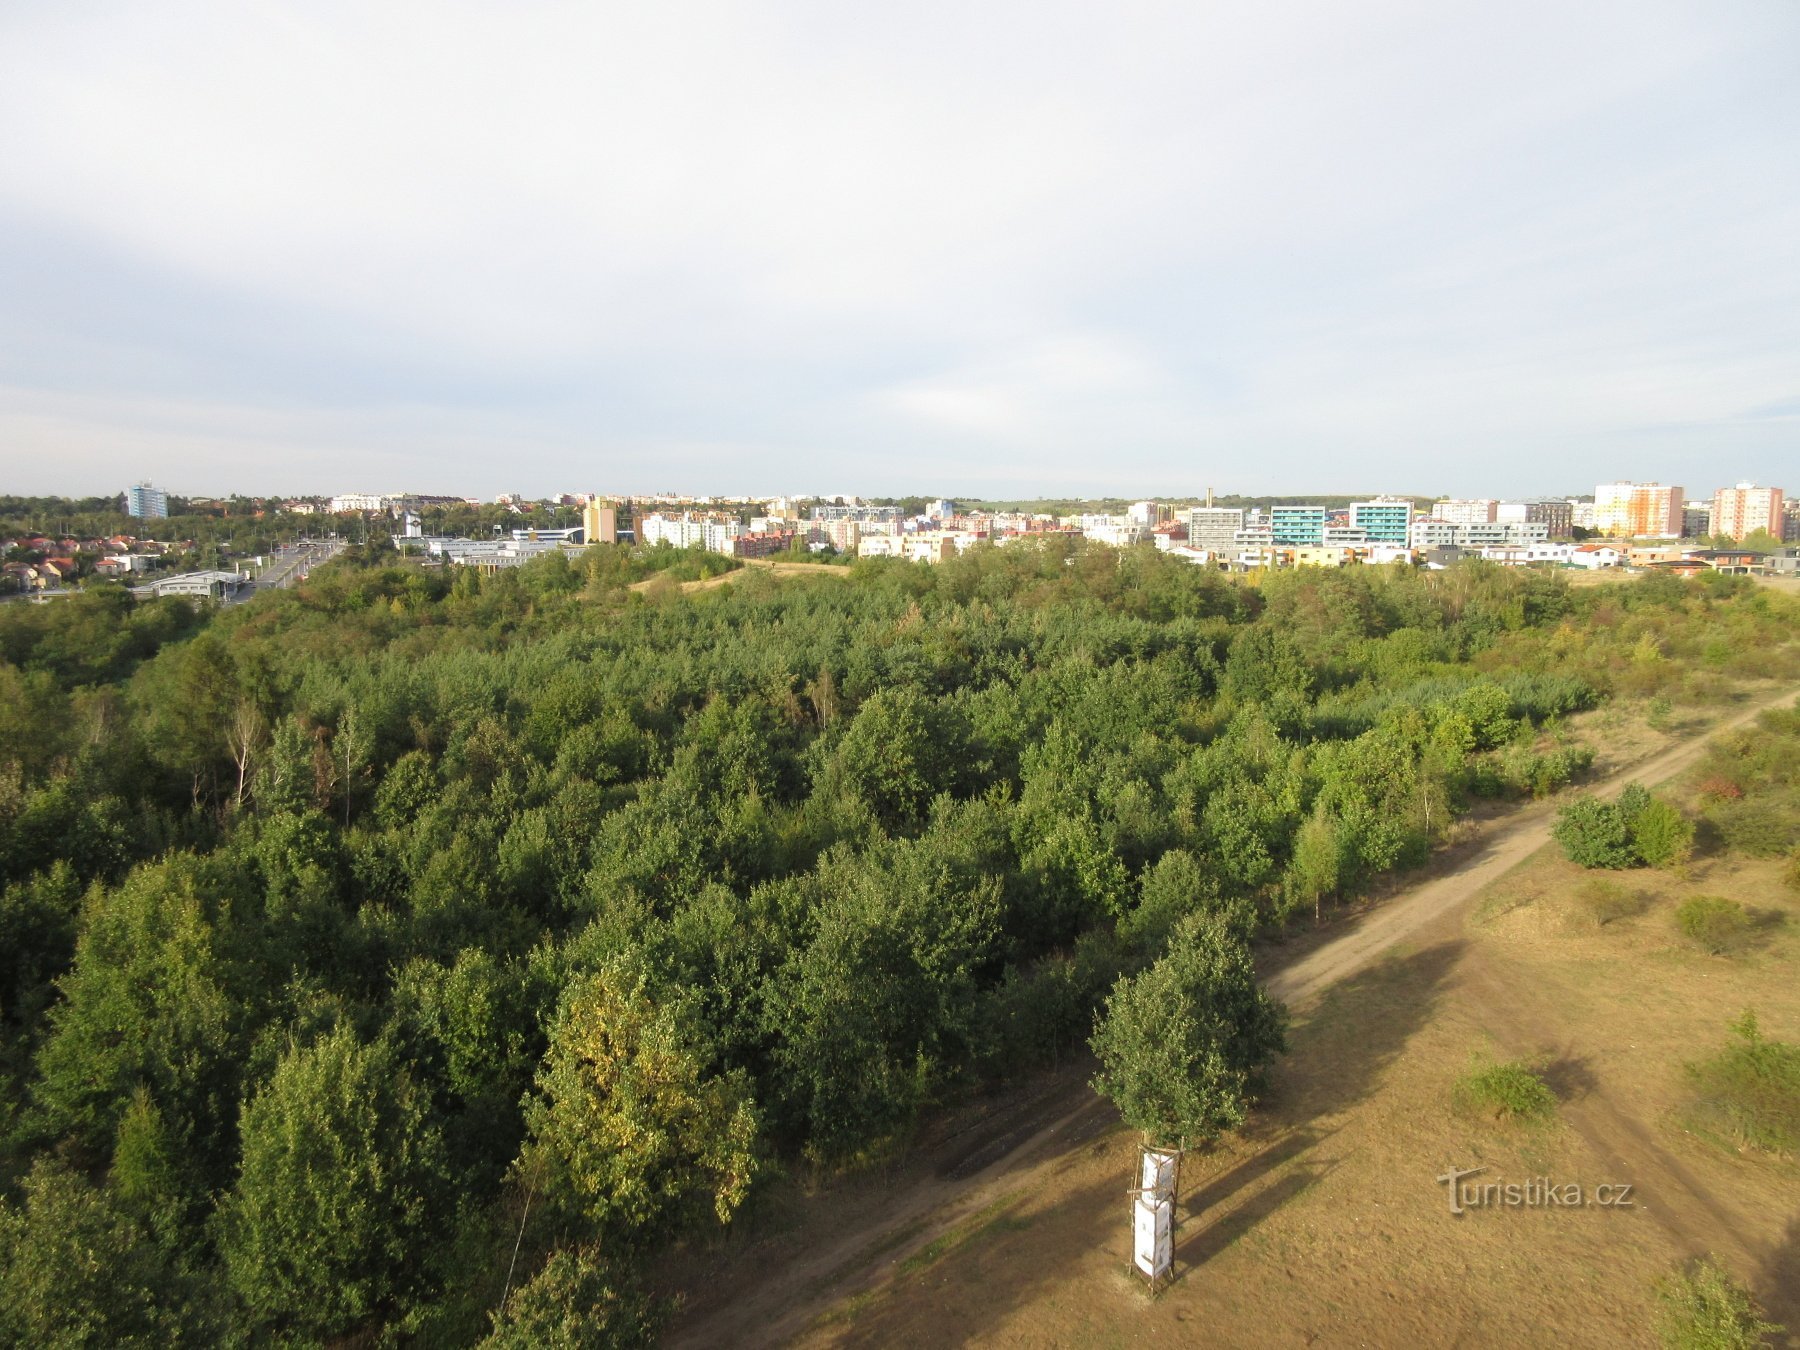 Utsikt från Doubravka